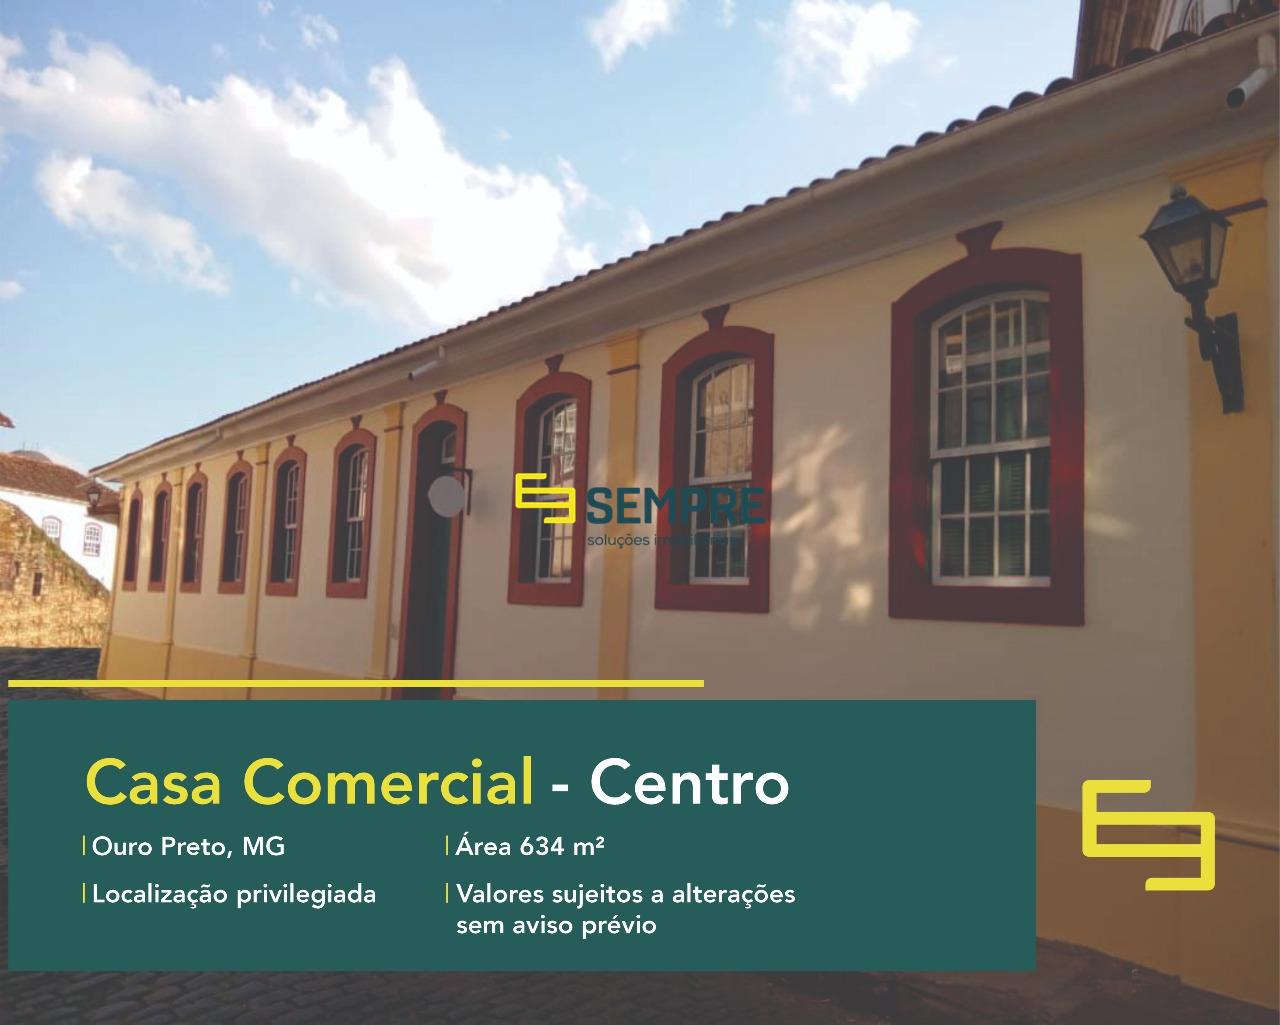 Casa comercial para venda em Ouro Preto, excelente localização. O estabelecimento comercial conta, sobretudo, com área de 634,63 m².